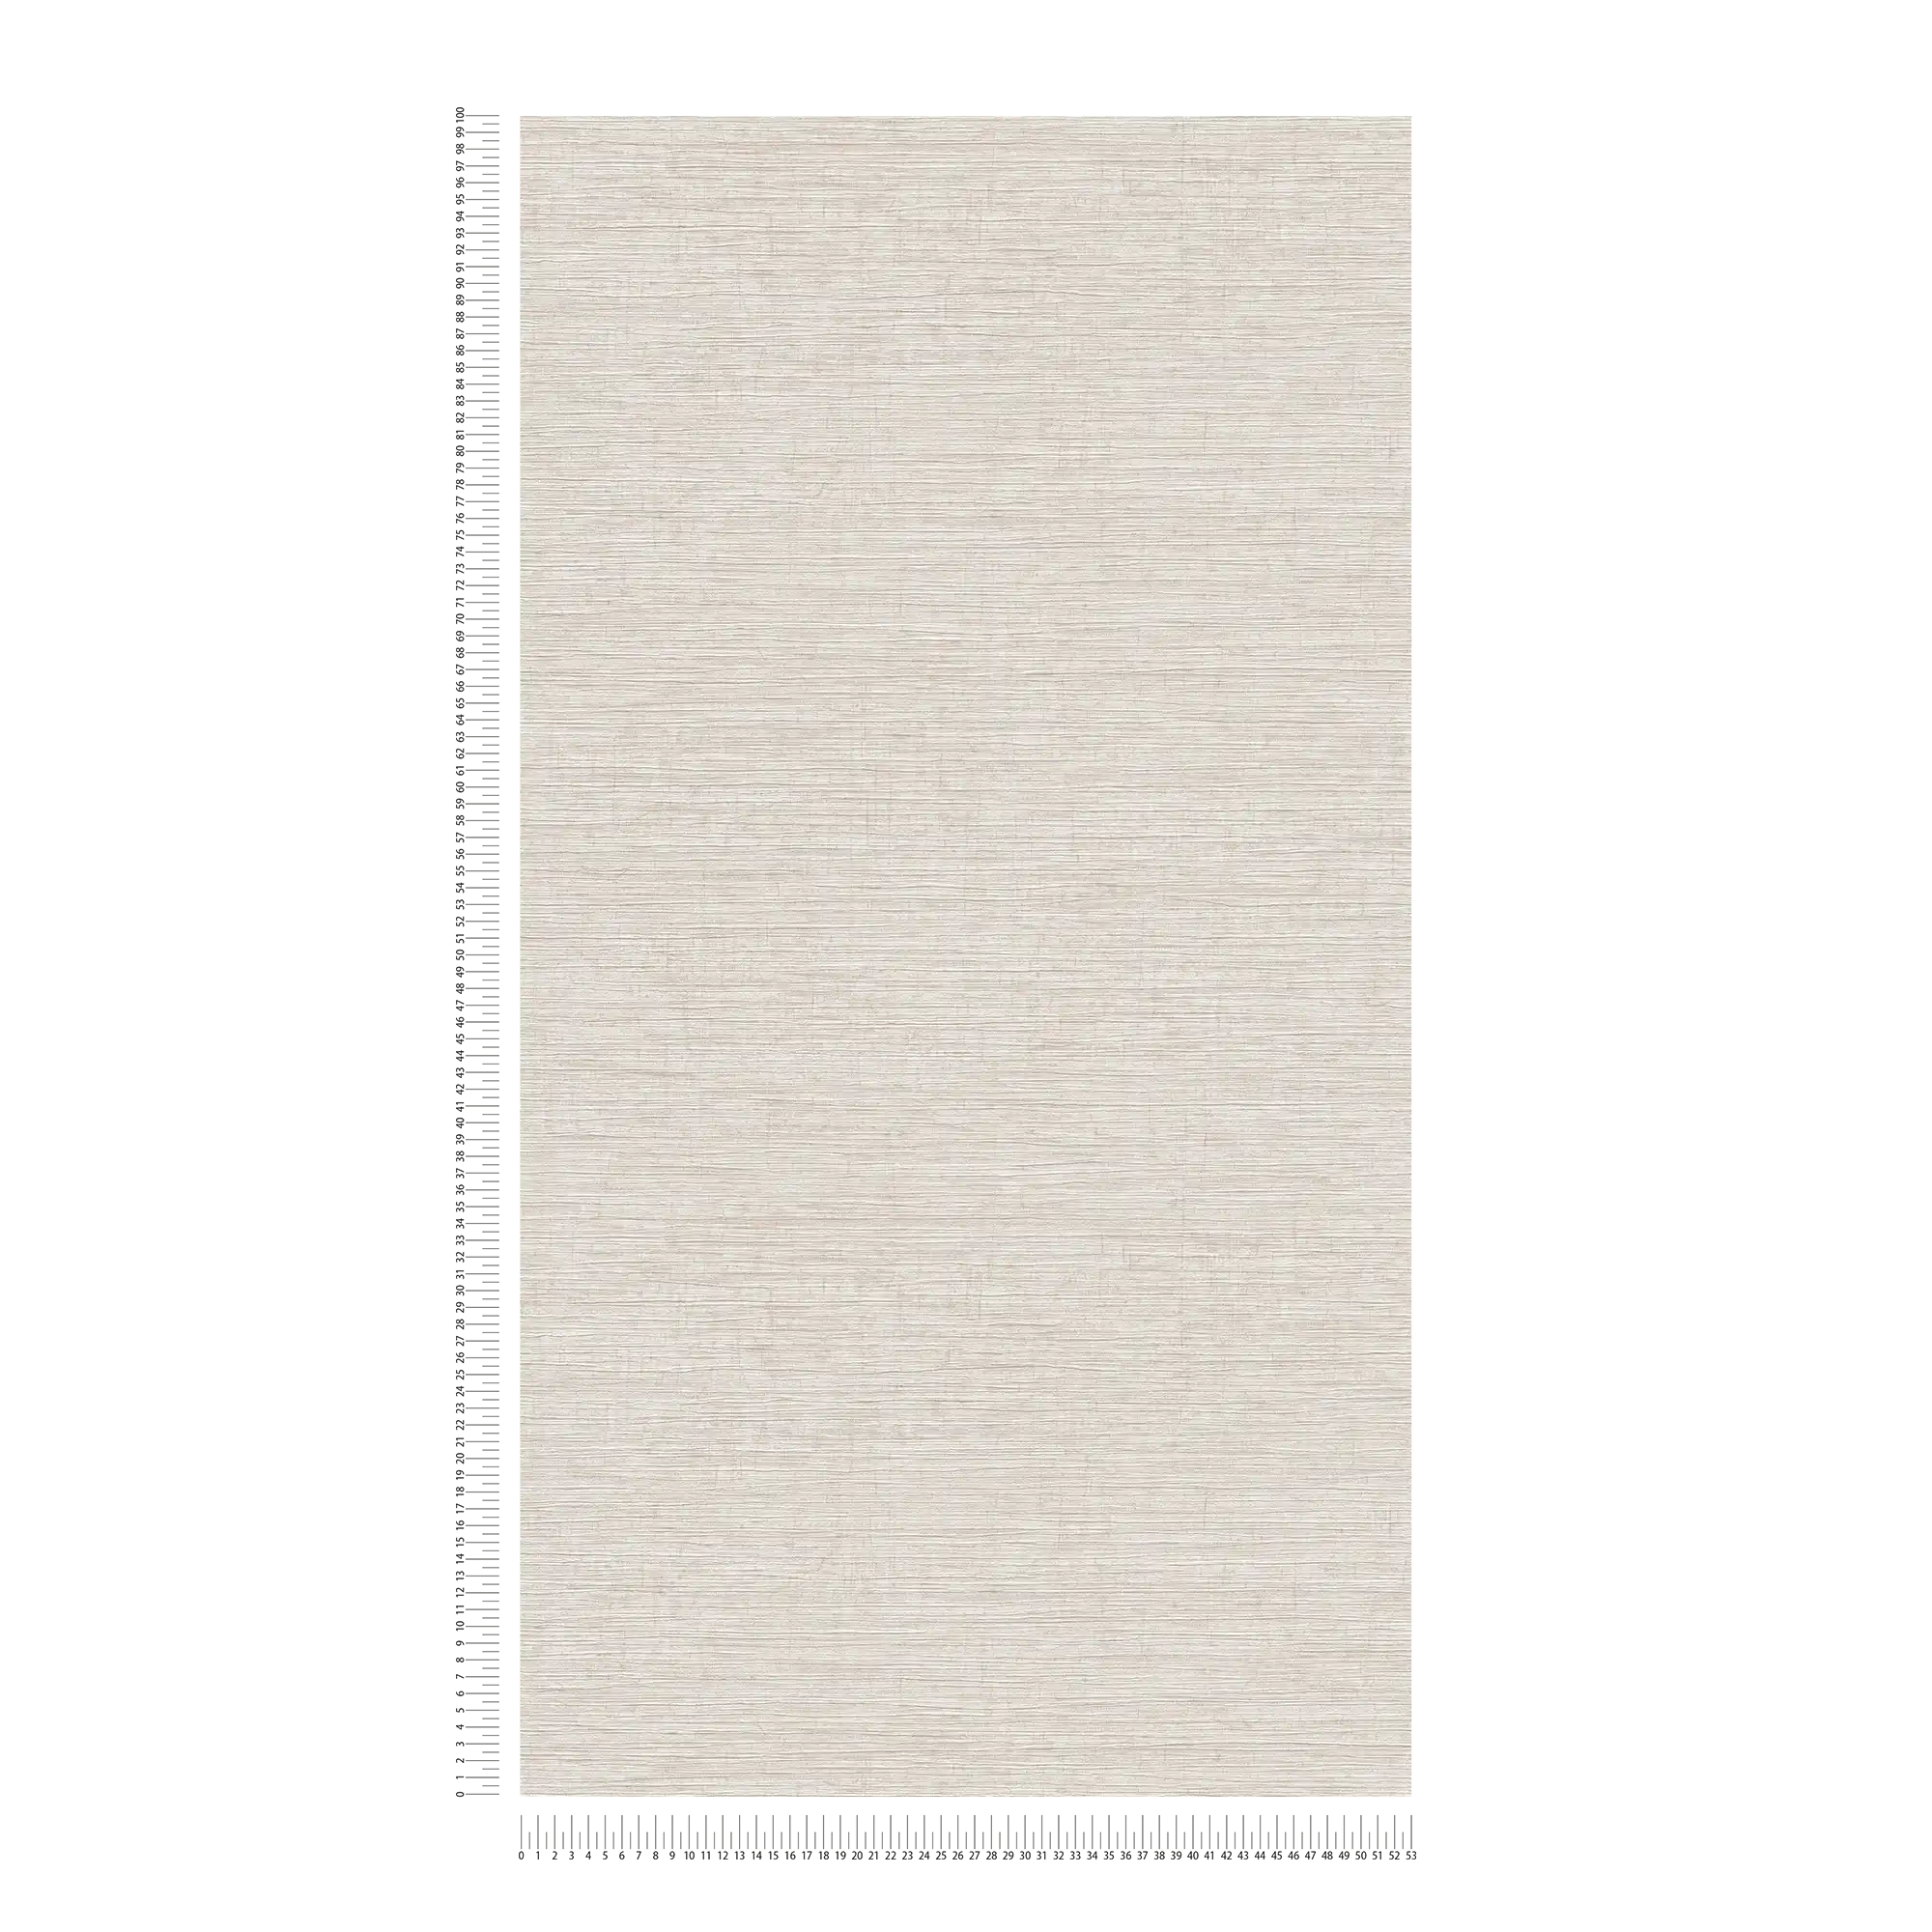             Vliesbehang gevlekt met textiel reliëf patroon - beige, bruin, grijs
        